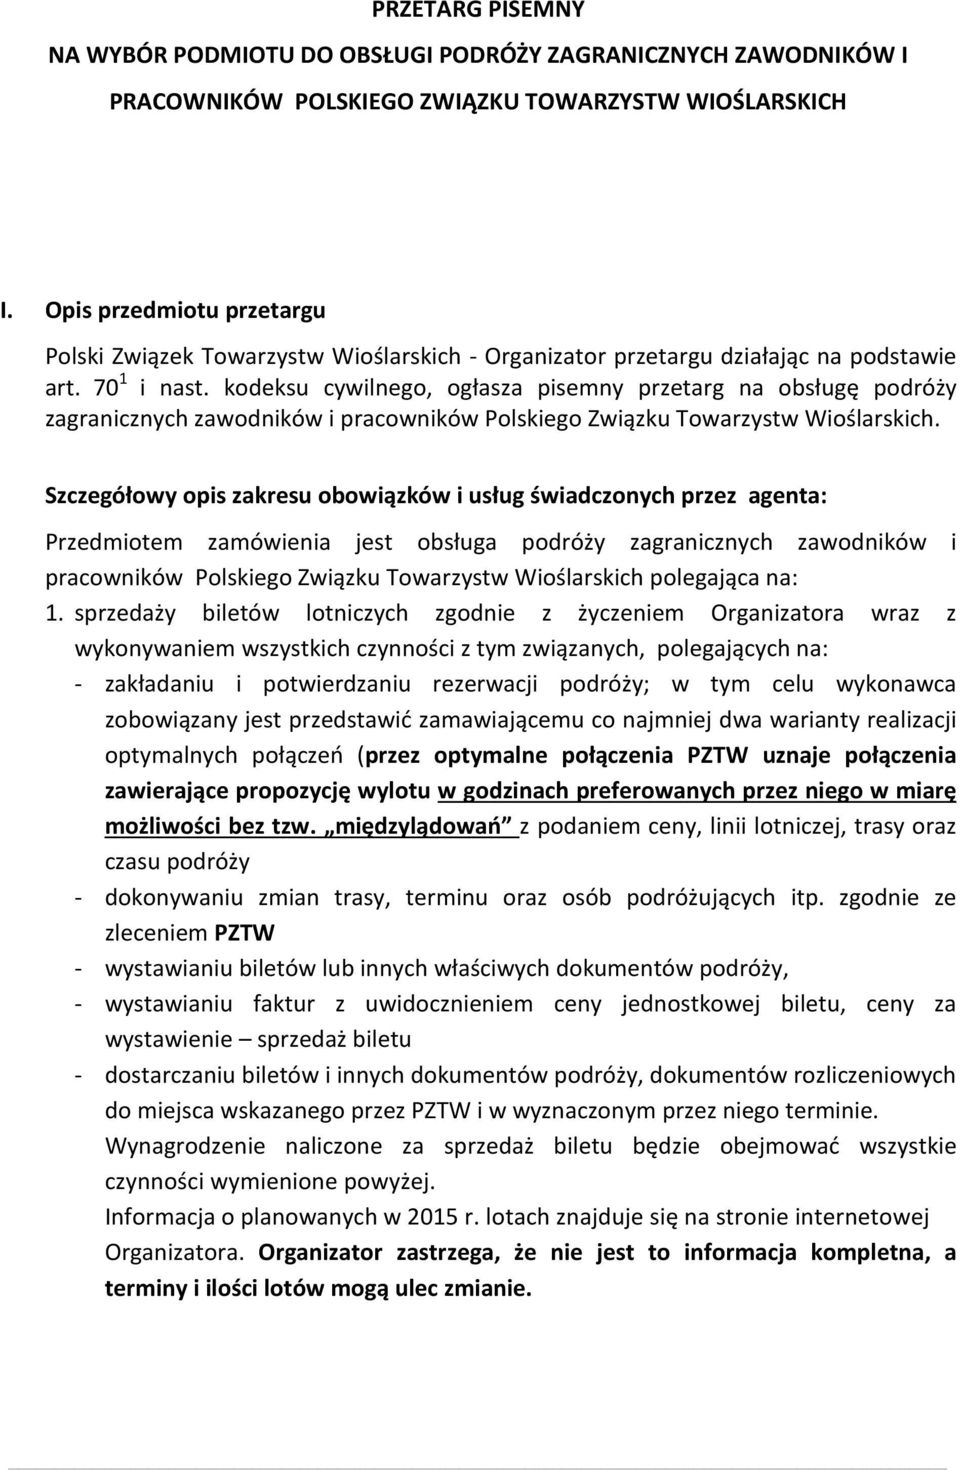 kodeksu cywilnego, ogłasza pisemny przetarg na obsługę podróży zagranicznych zawodników i pracowników Polskiego Związku Towarzystw Wioślarskich.